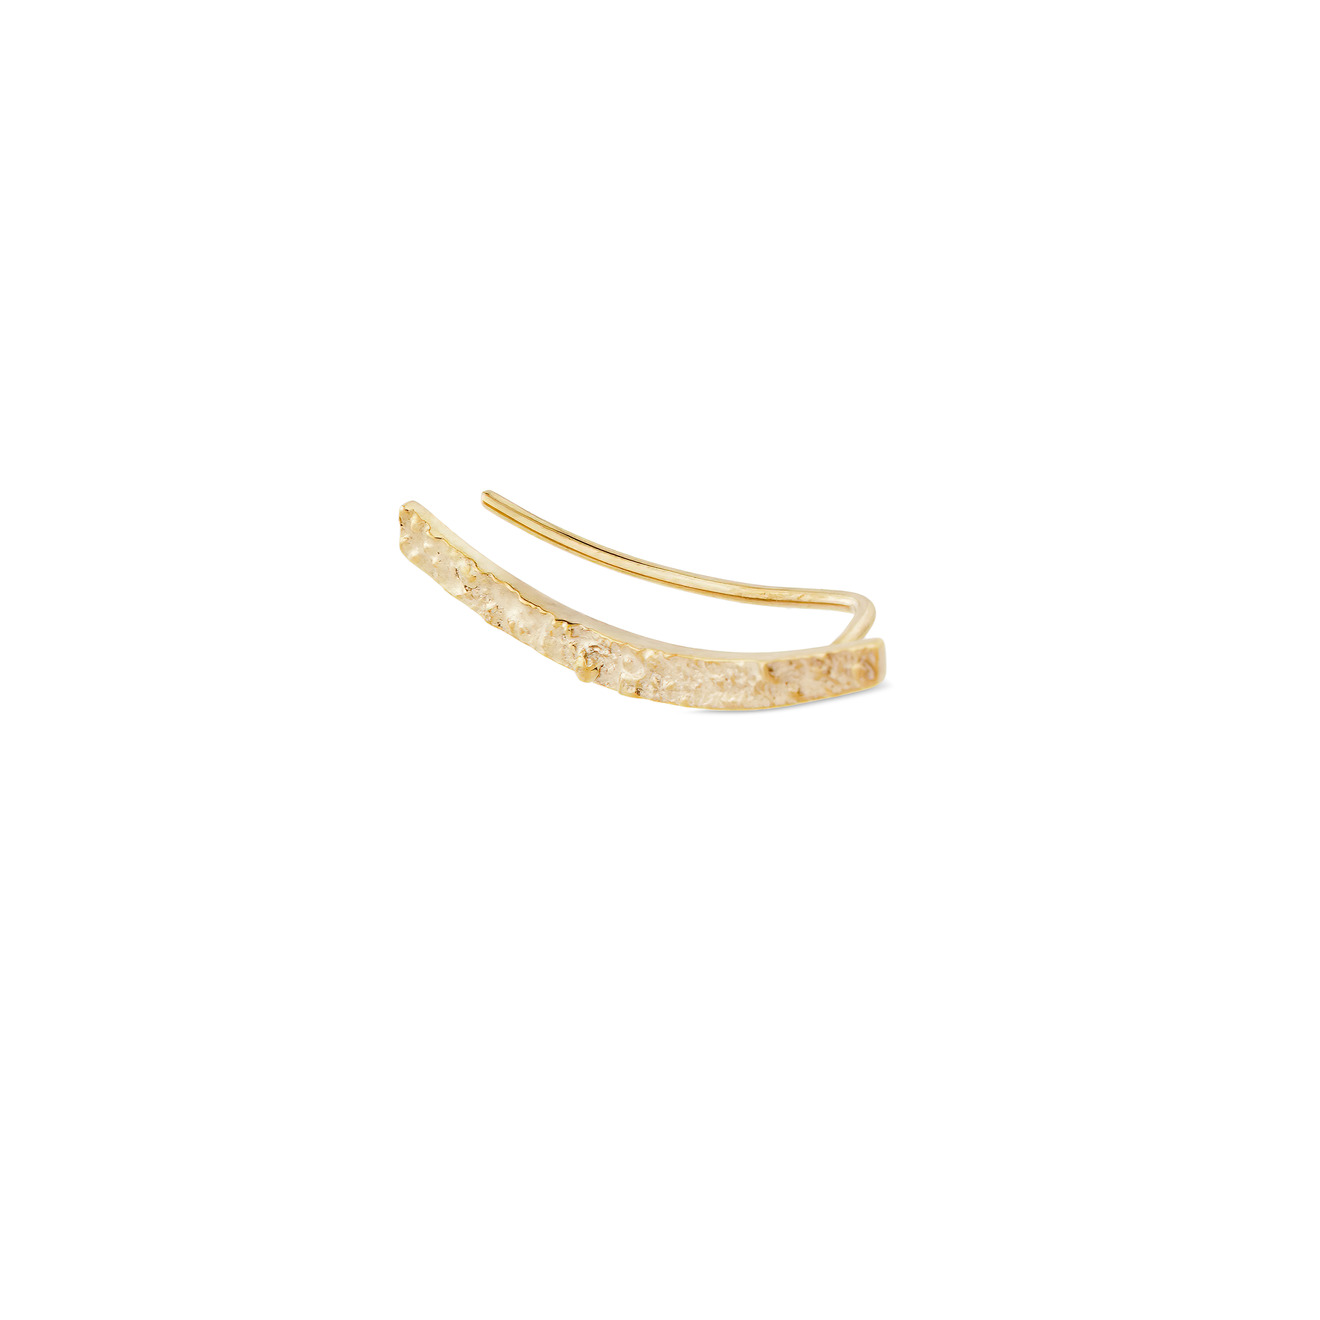 УРА jewelry Позолоченный клаймбер из серебра на правое ухо ms marble позолоченный клаймбер змея из серебра movement на левое ухо